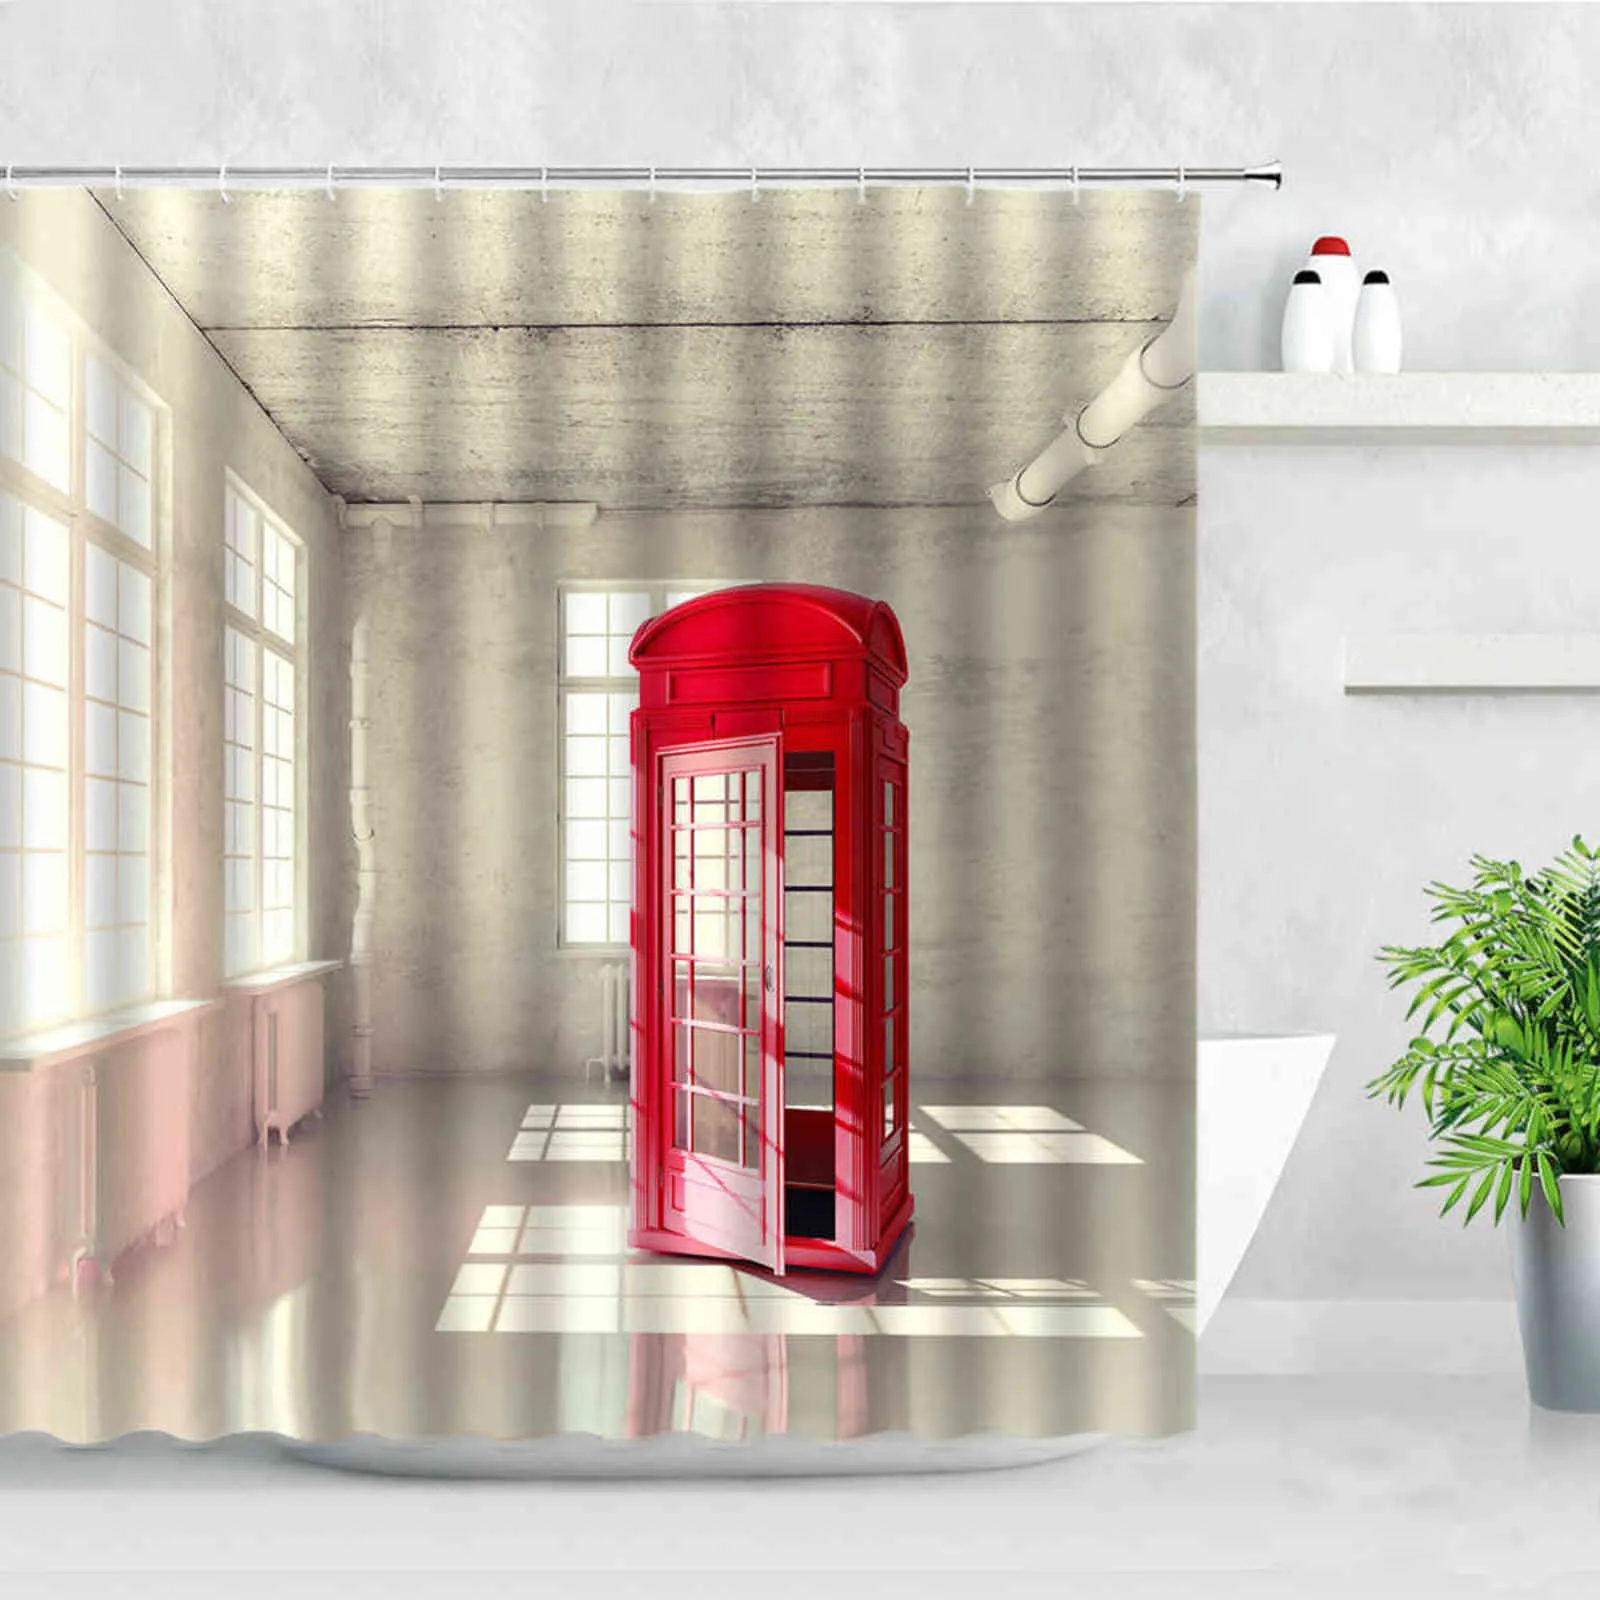 London Street View Prysznic Zasłony Big Ben Red Telefon Booth Druk Druk Retro Wall Decor Tkaniny Ekran Haki Łazienka Zestaw 211116